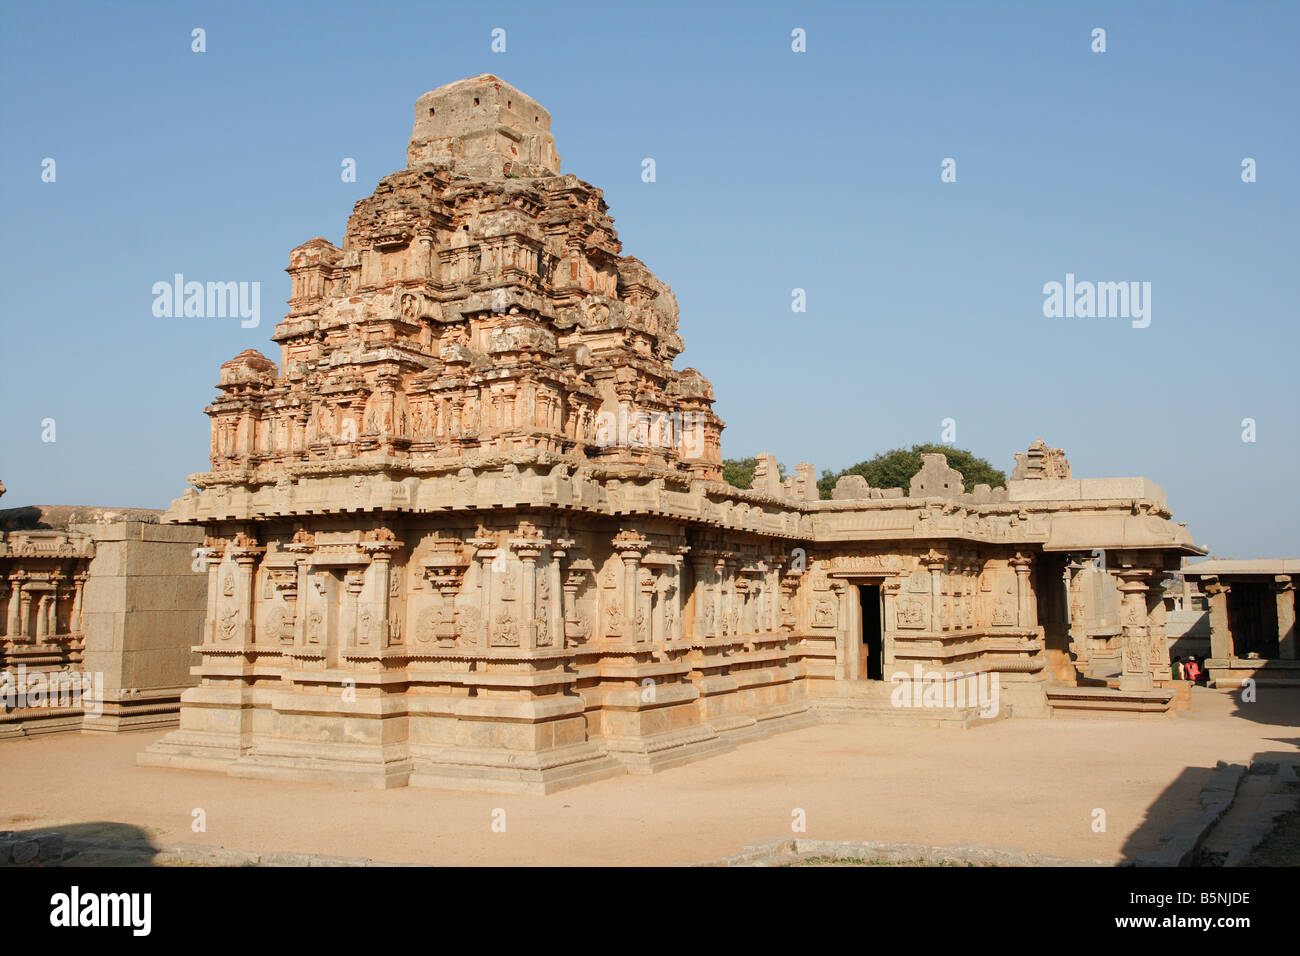 Mahanavami temple at the ancient site of Hampi, Karnataka, India Stock Photo